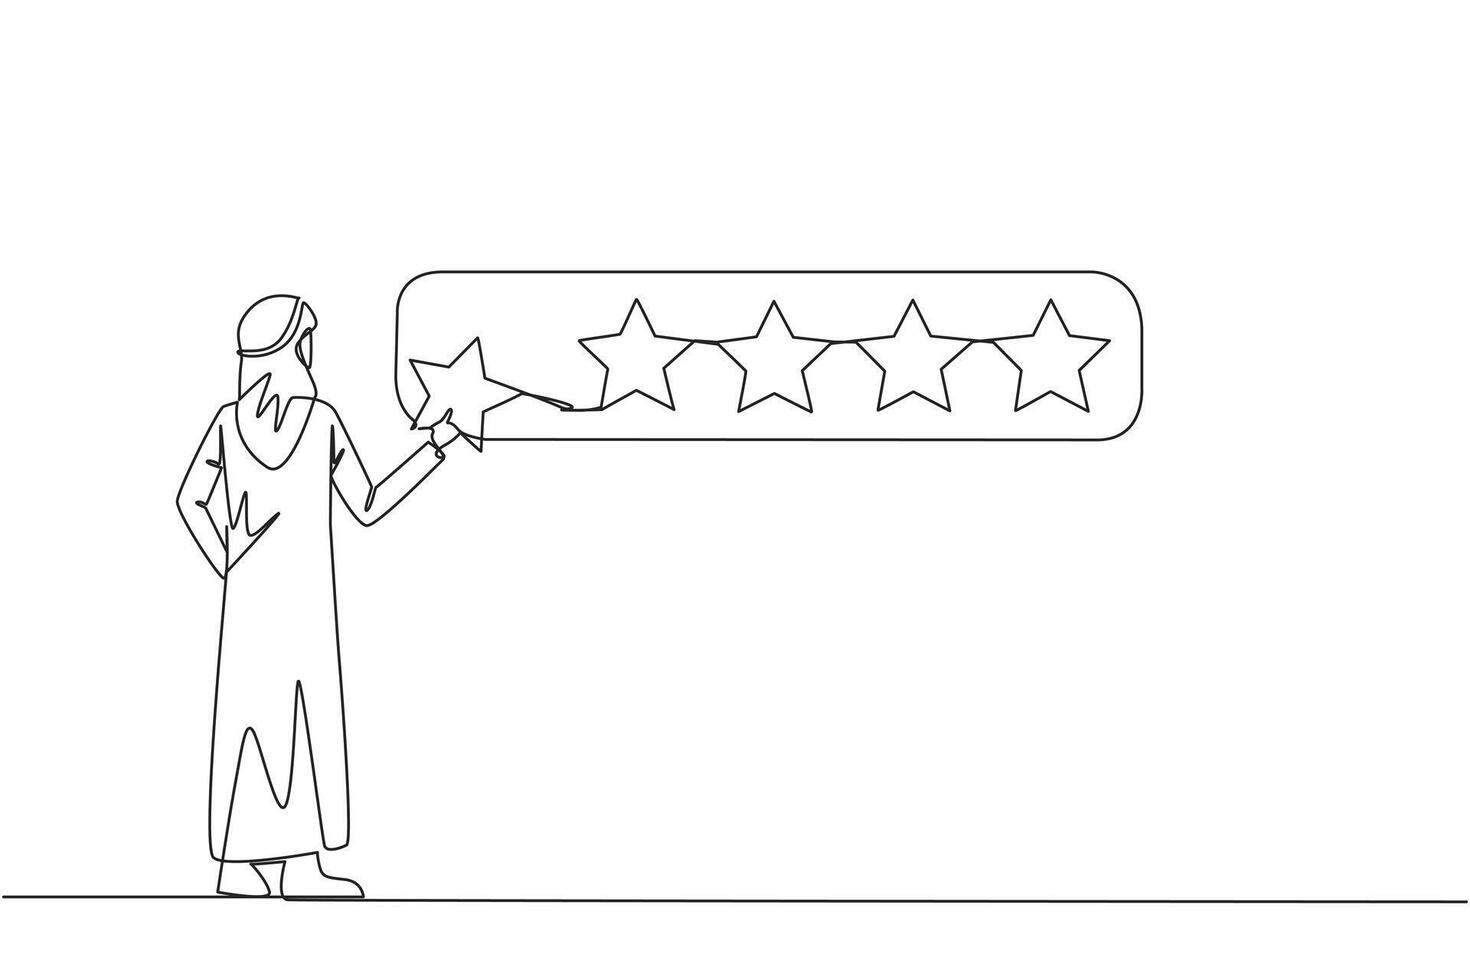 kontinuierlich einer Linie Zeichnung arabisch Mann Stehen halten 1 Star und wollen zu machen es 5 Star Reihe. zufrieden Kunden und geben perfekt Bewertung. Star Bewertung. Single Linie zeichnen Design Vektor Illustration